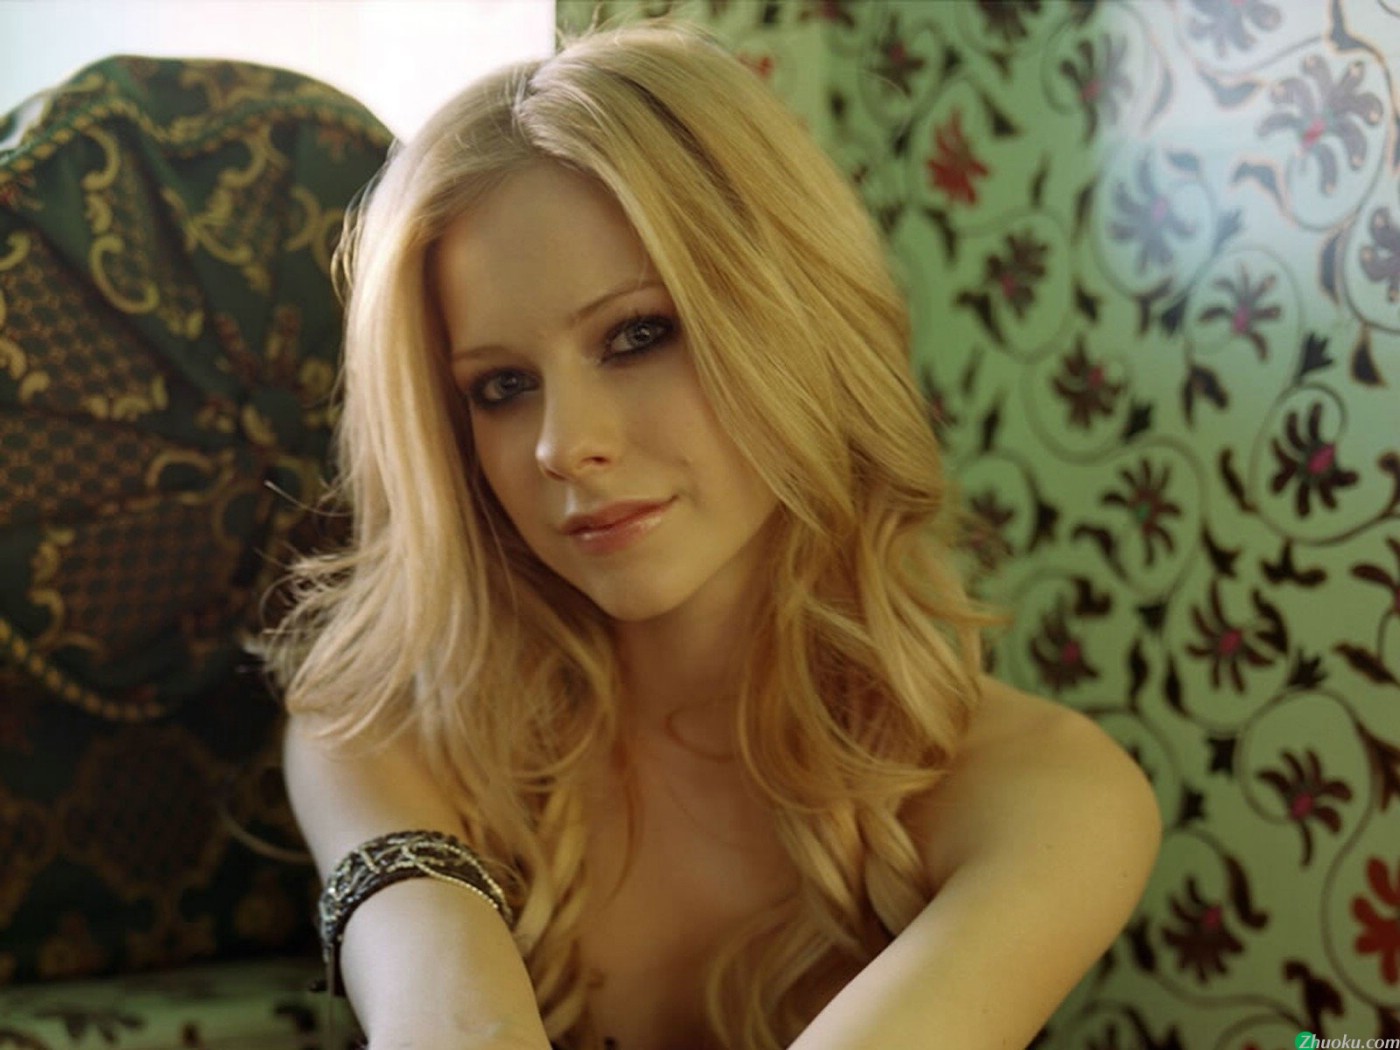 壁纸1400x1050艾薇儿 Avril Lavigne 壁纸116壁纸 艾薇儿 Avril Lavigne壁纸 艾薇儿 Avril Lavigne图片 艾薇儿 Avril Lavigne素材 明星壁纸 明星图库 明星图片素材桌面壁纸